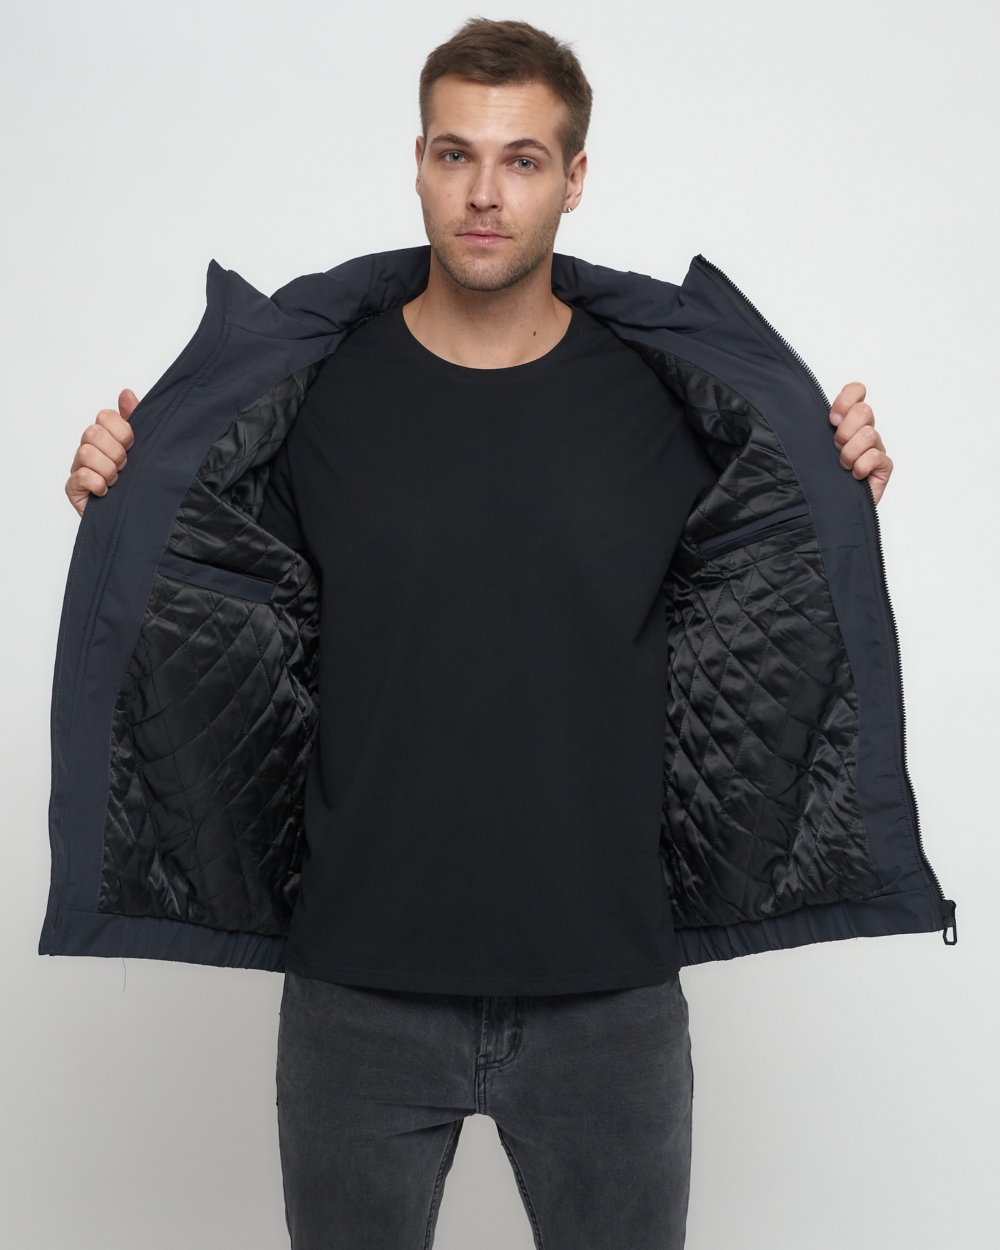 Купить куртку мужскую большого размера оптом от производителя недорого в Москве 88657TC 1